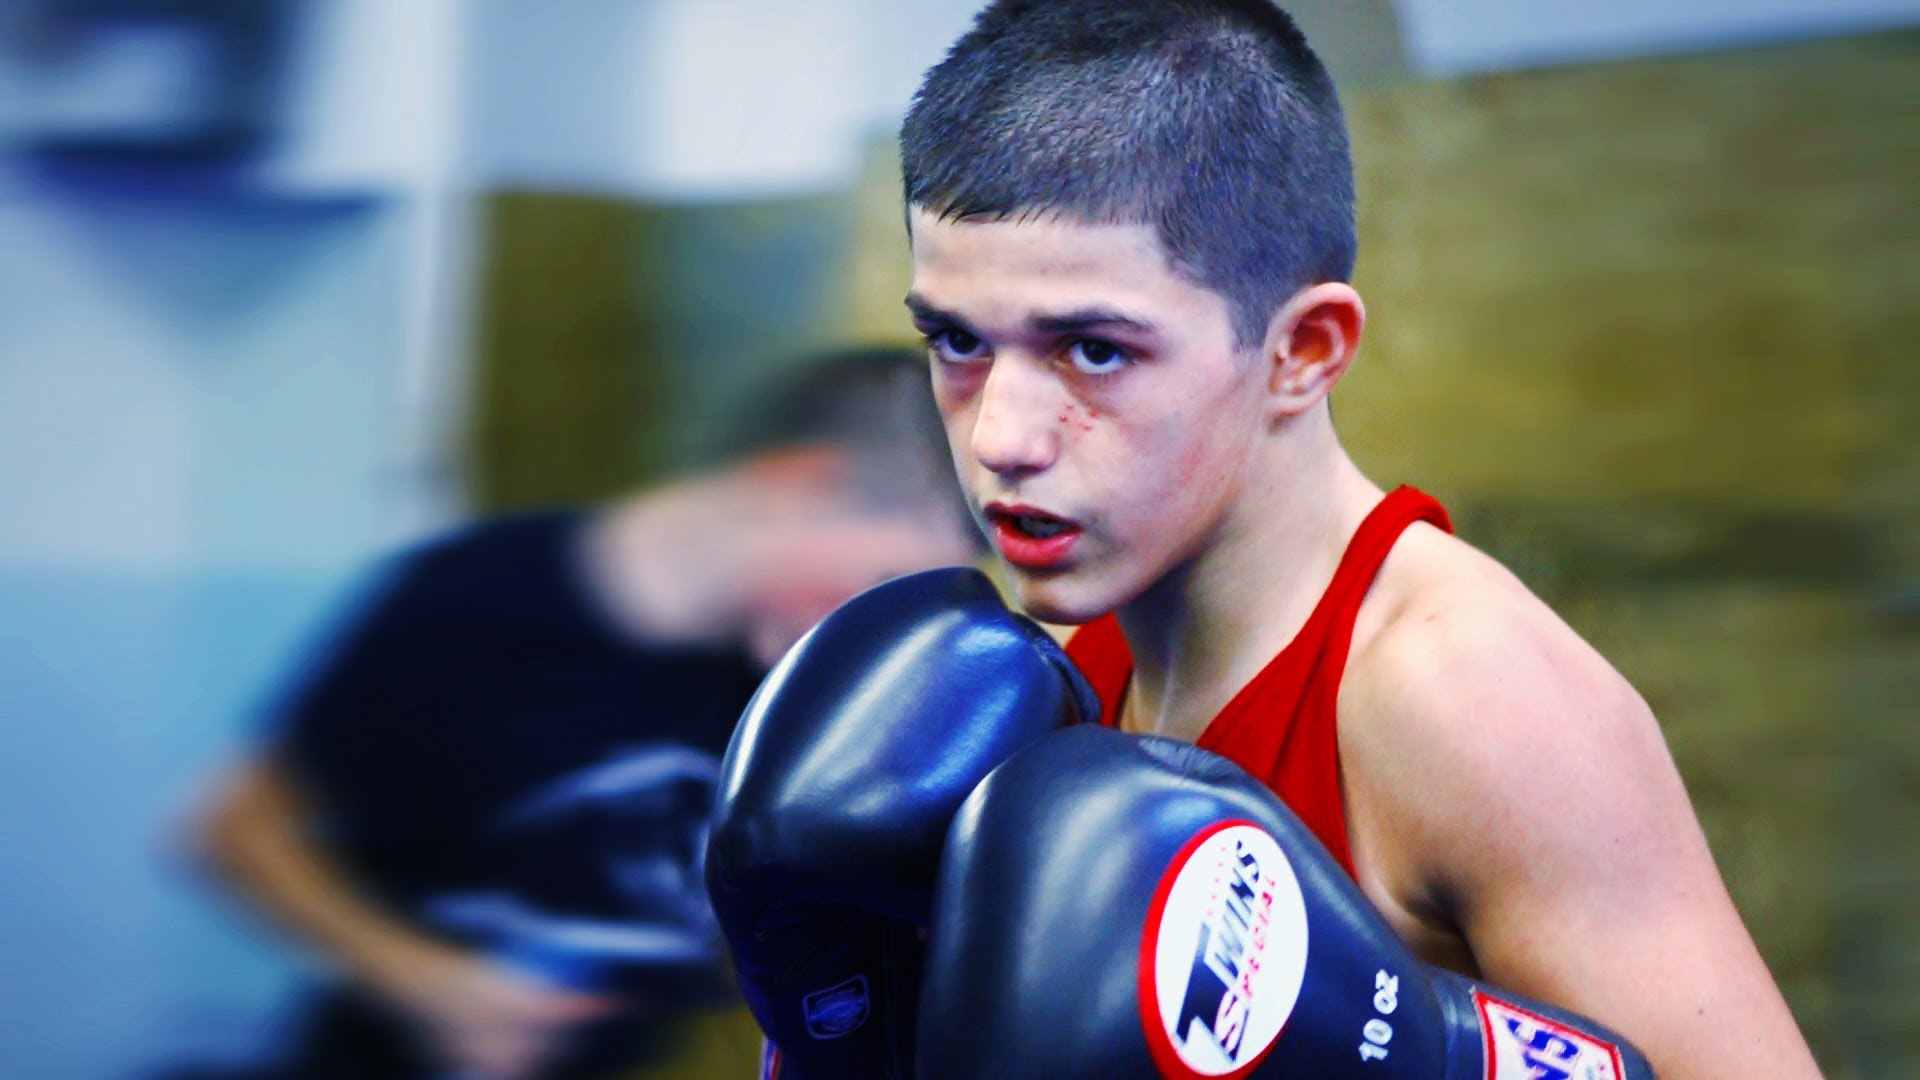 Reshat Mati - boxing, kickboxing, and mma prodigy